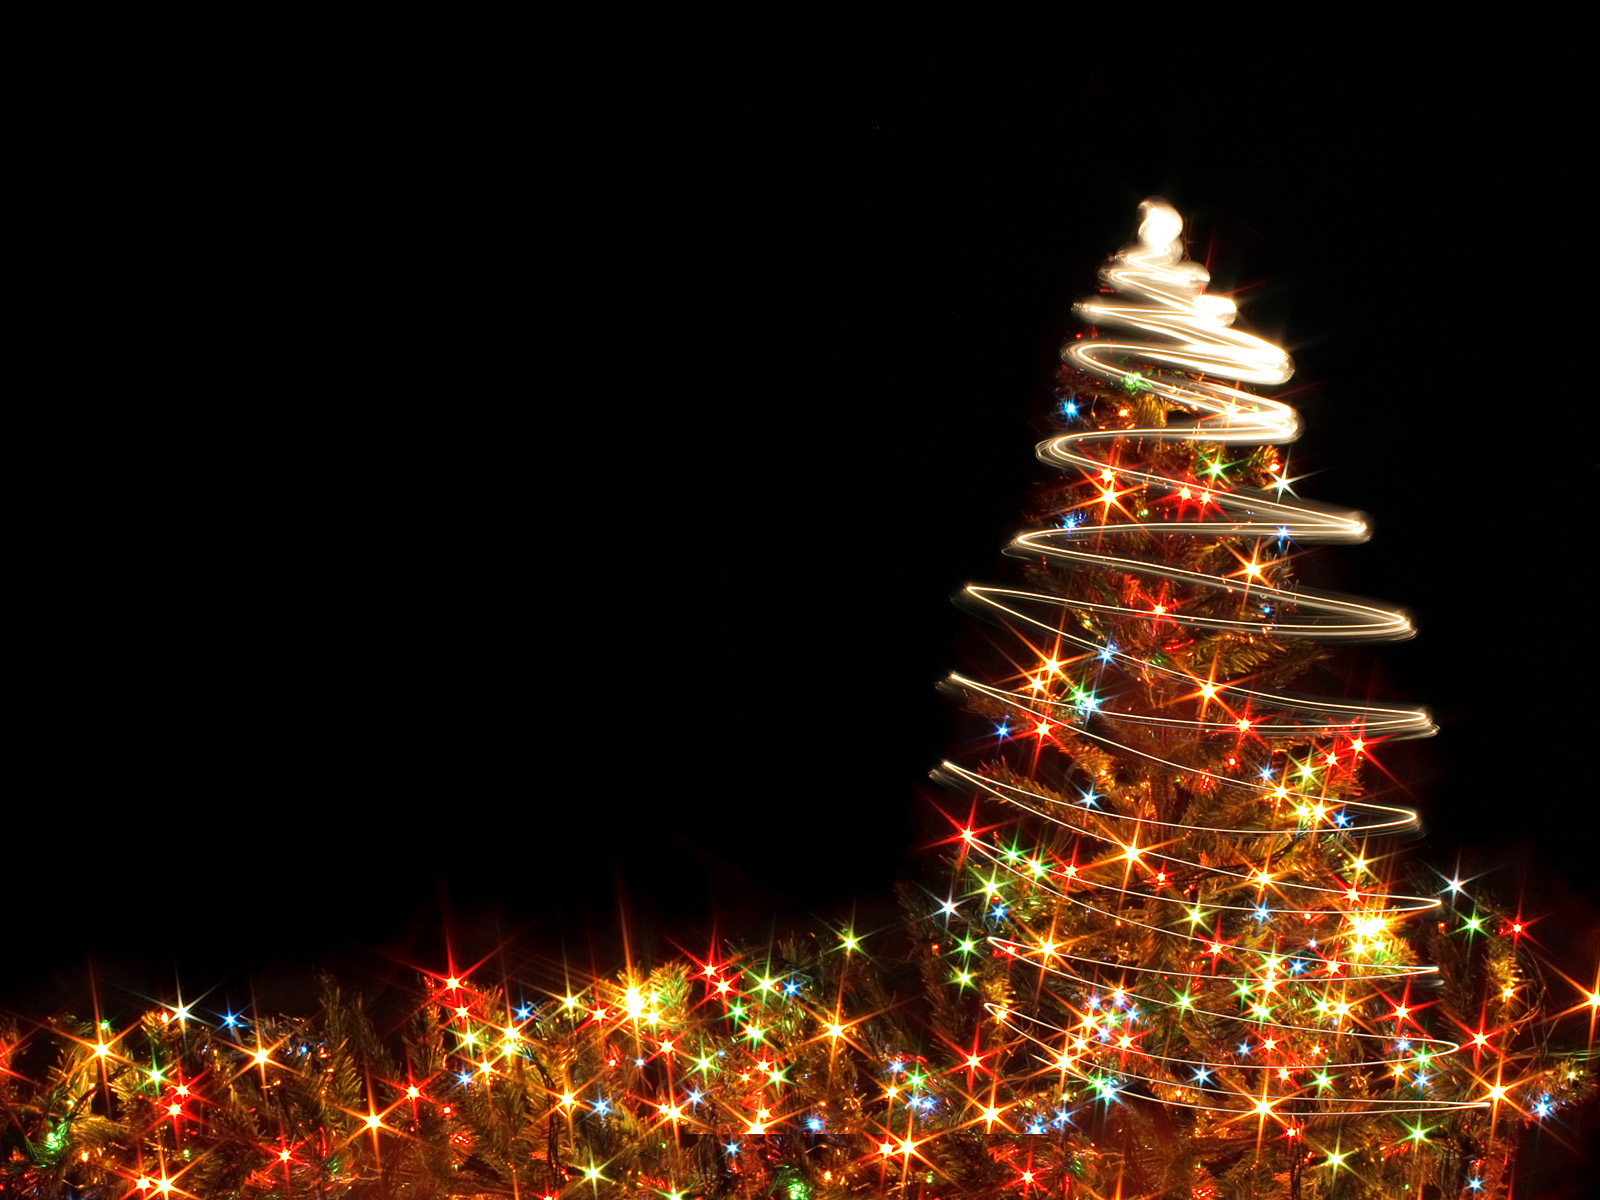 خلفيات شجرة عيد الميلاد 2013 - Christmas Trees HD Wallpaper 2013- خلفيات شجرة الميلاد 2013